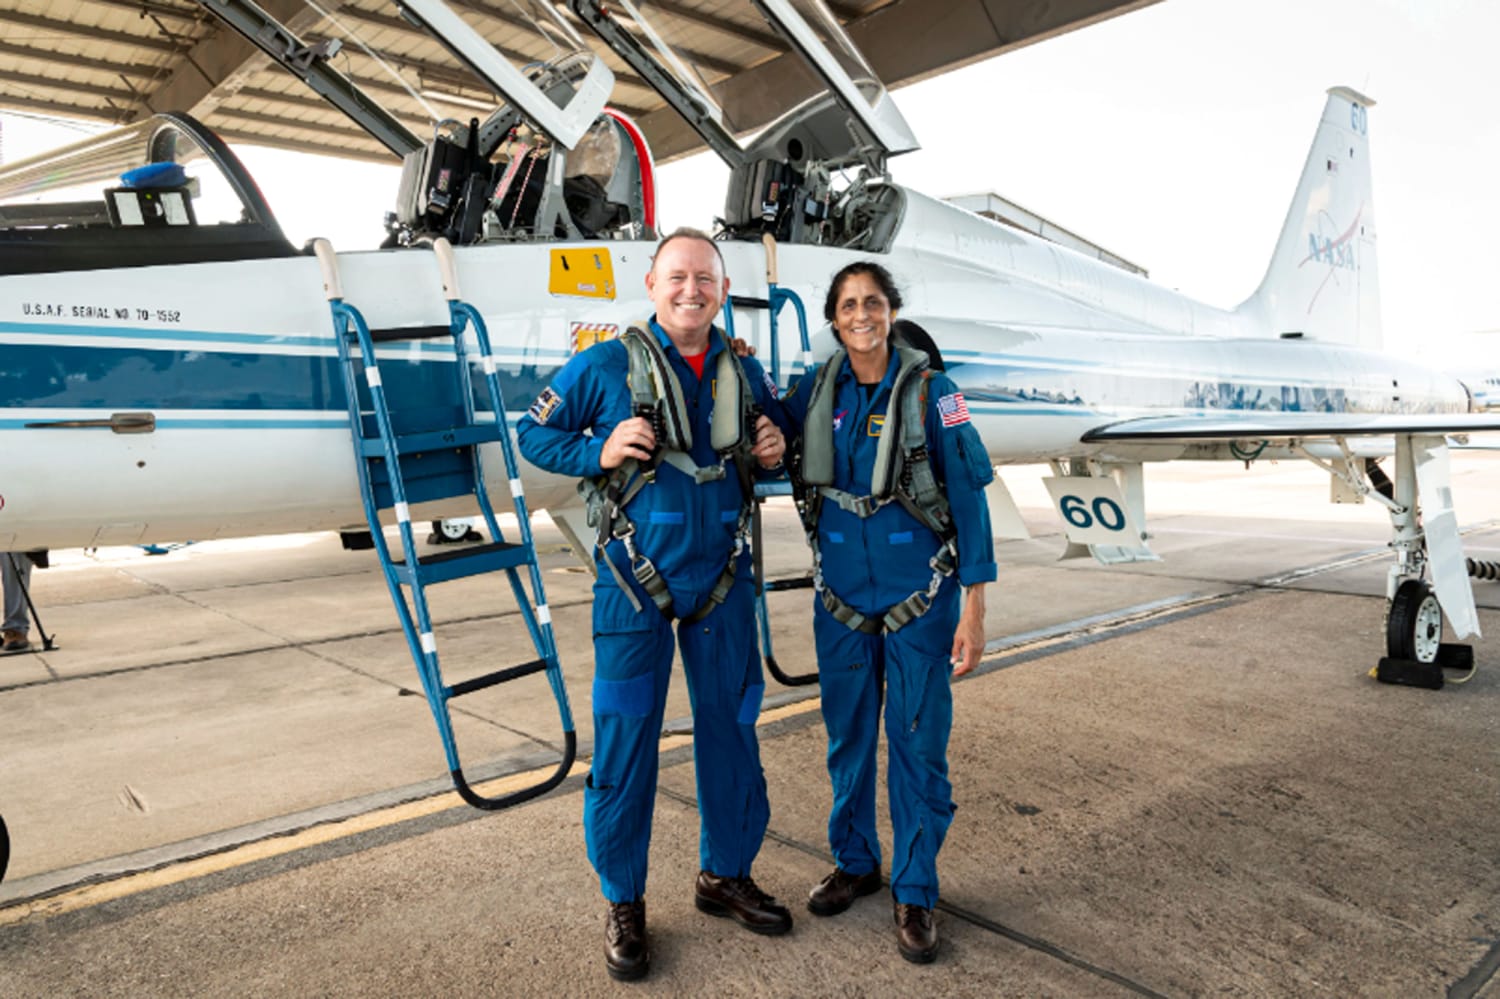 Temui astronot NASA yang akan menjadi orang pertama yang meluncurkan pesawat luar angkasa Boeing